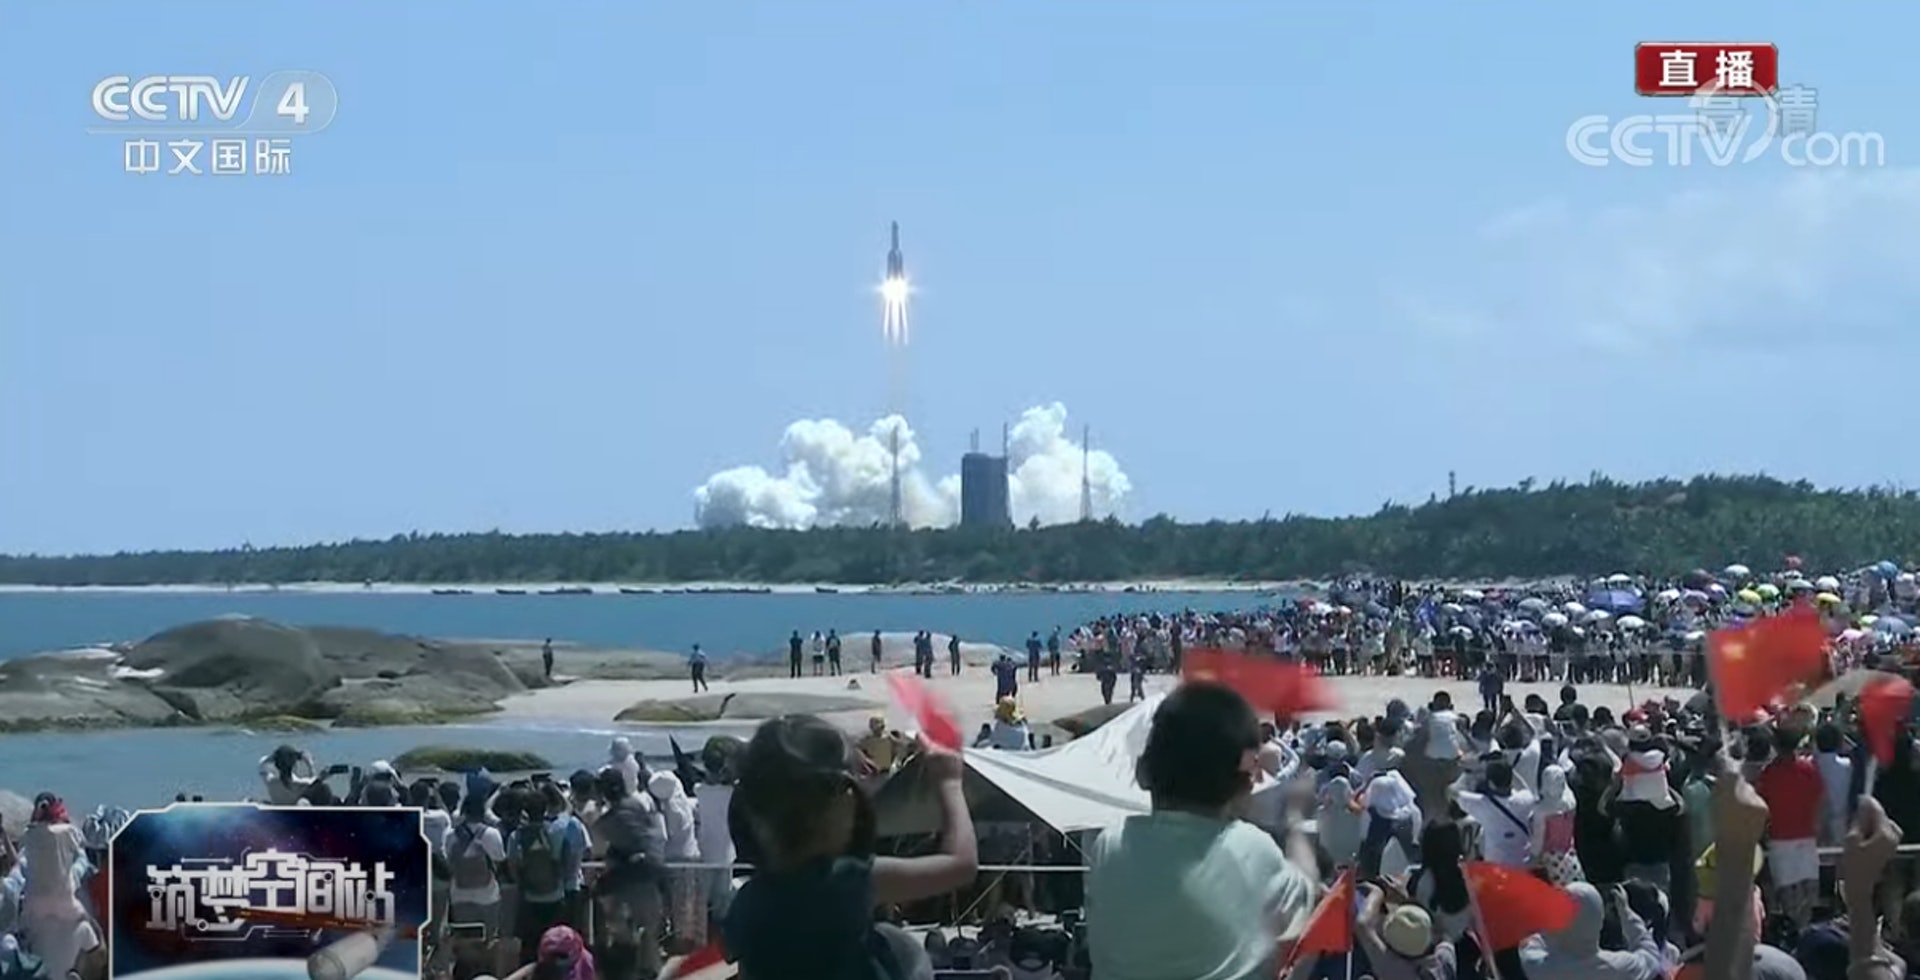 中国问天实验舱发射成功 将对接中国太空站 太空人首次在轨迎接  